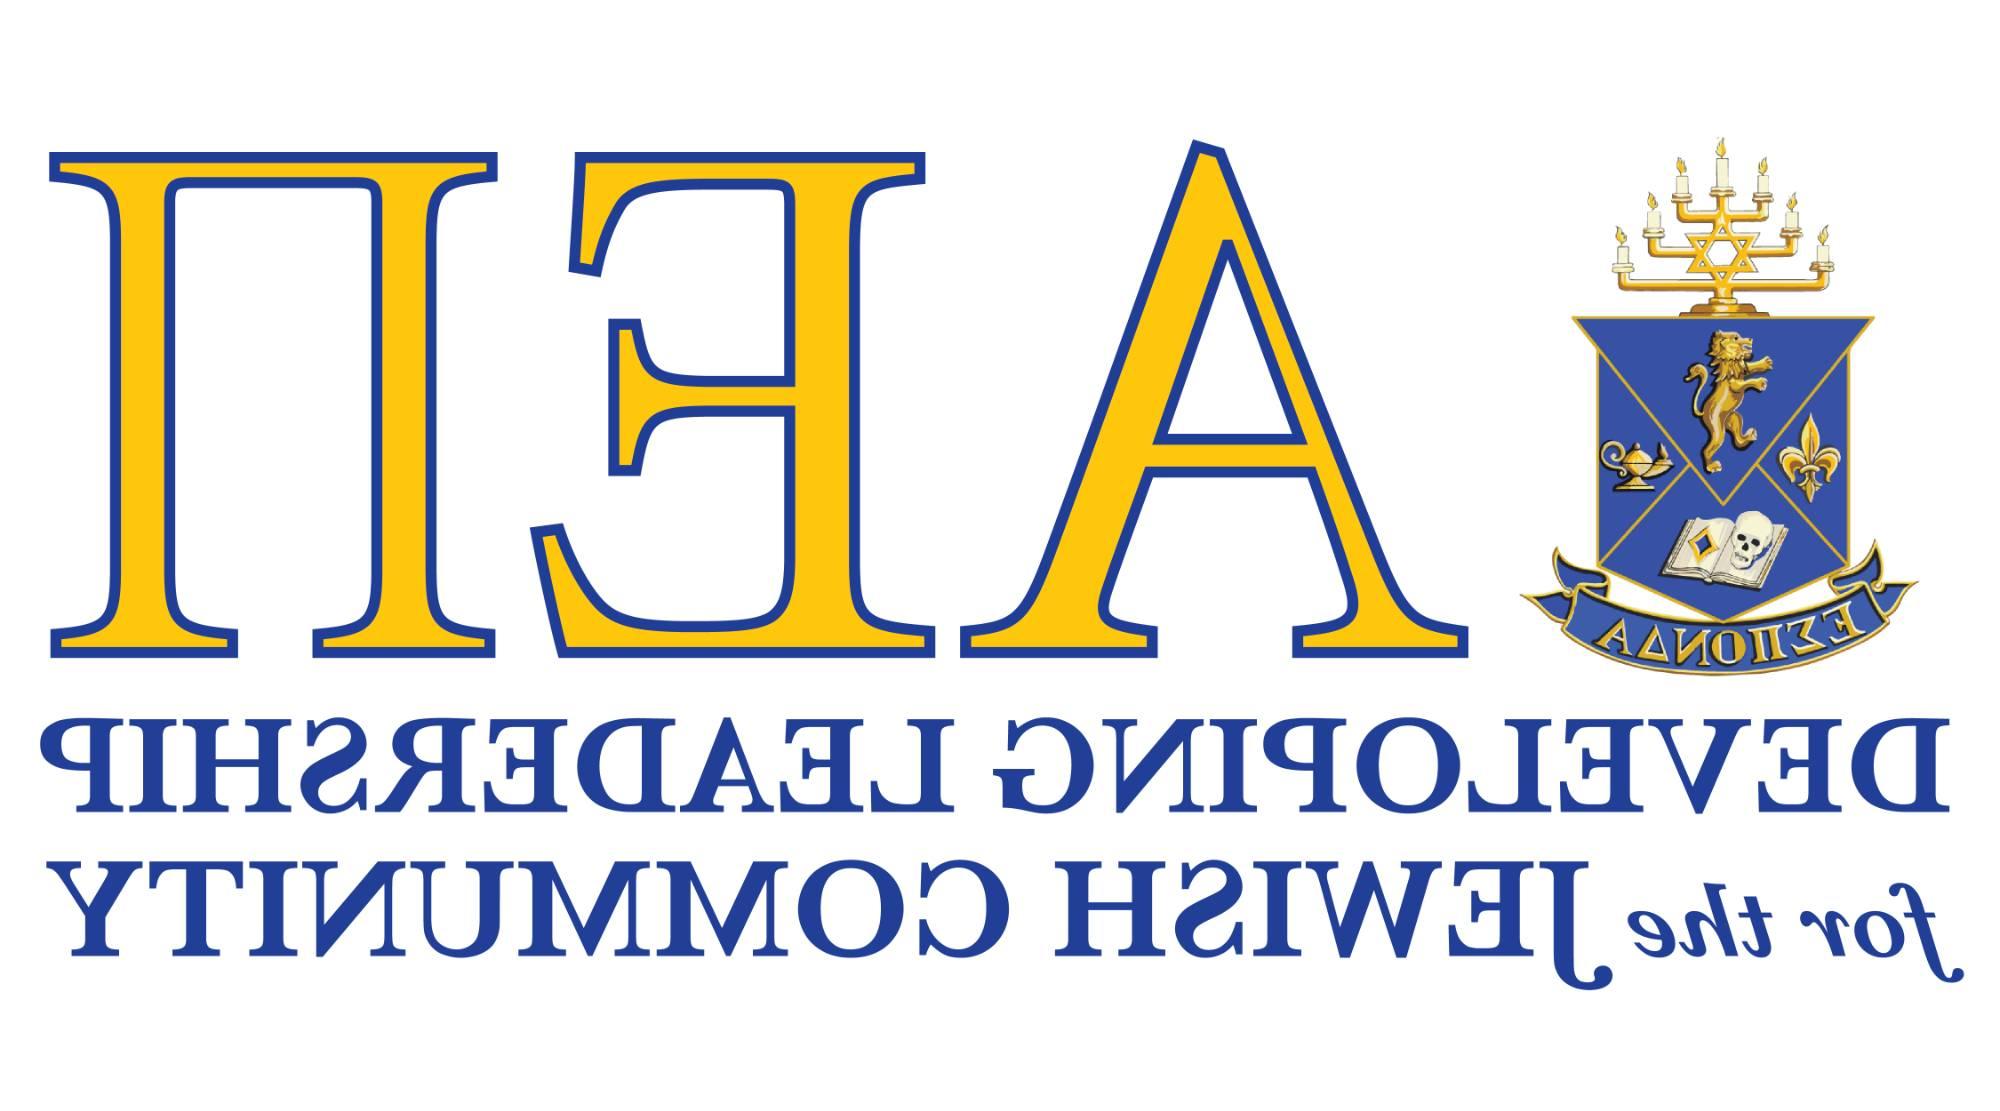 Logo of AEPi fraternity